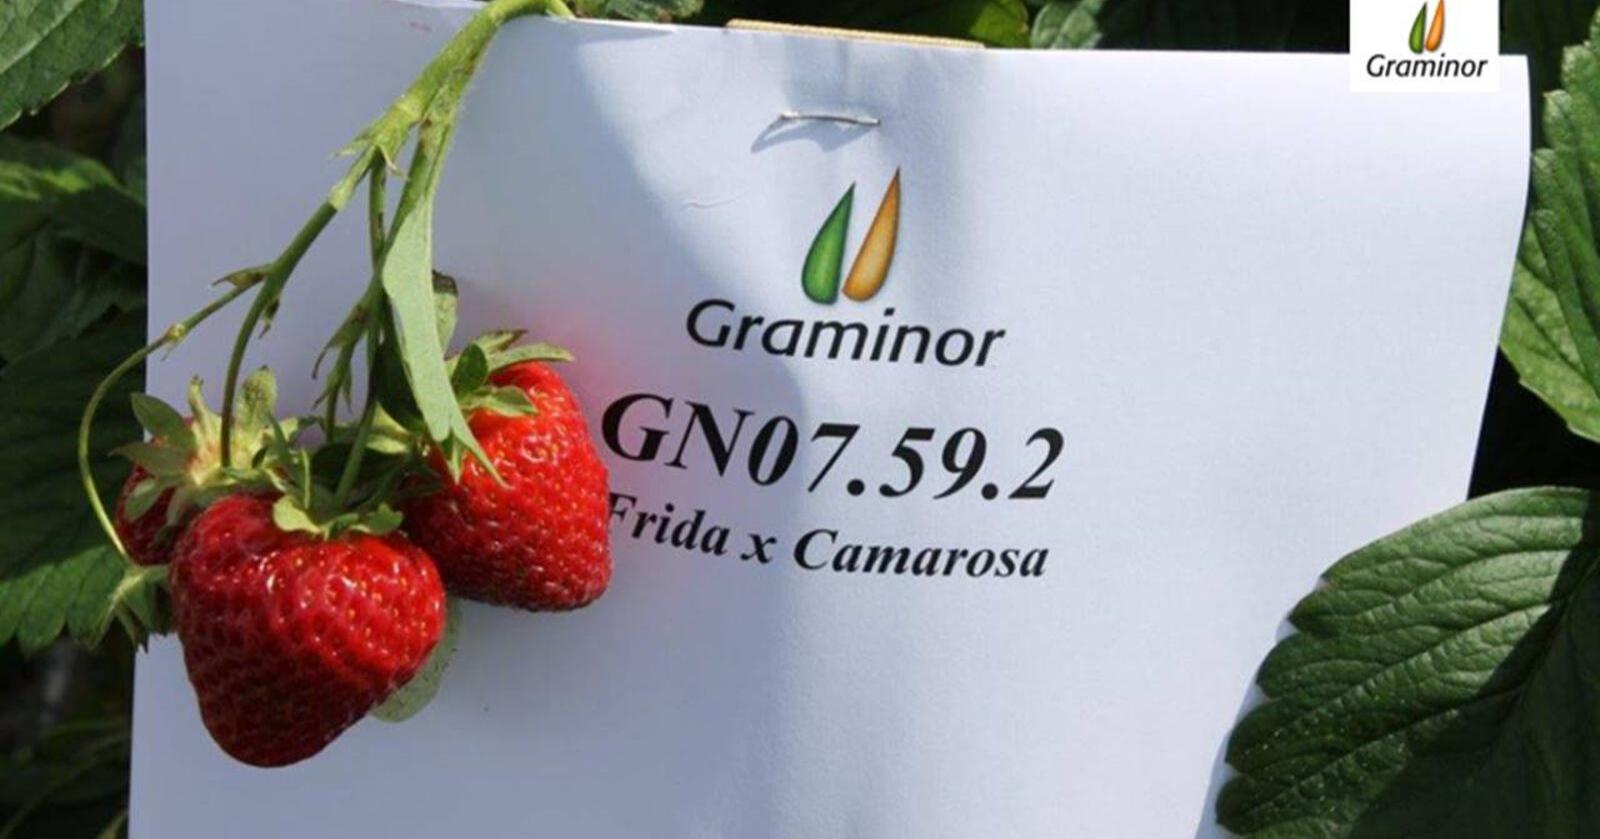 Graminor har brukt 12-13 år å utvikle den nye norske jordbærsorten, som foreløpig bare heter GN07.59.2. Foto: Graminor